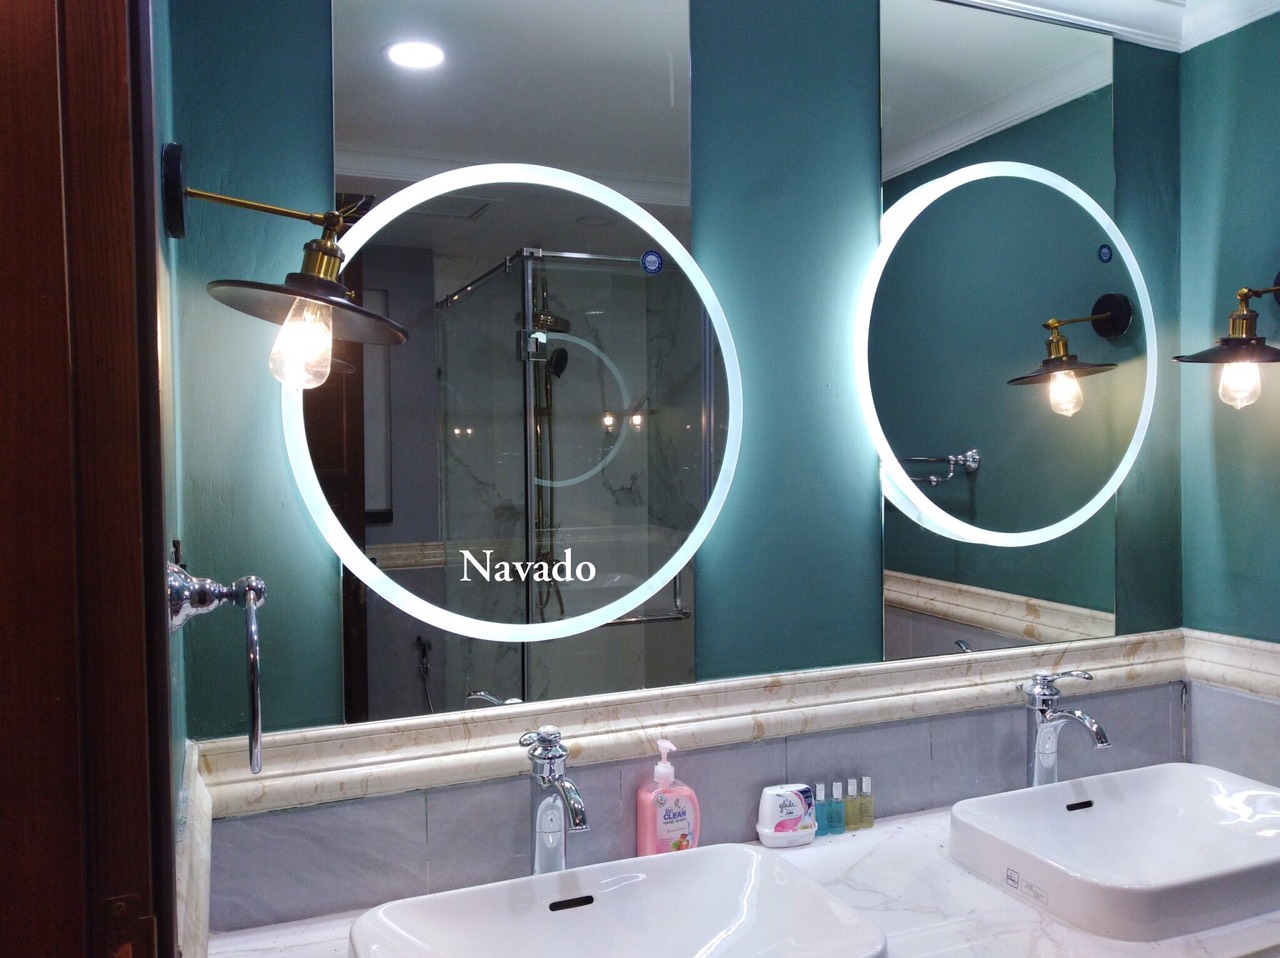 Gương soi đèn led là lựa chọn lý tưởng để giúp bạn nhìn rõ và tạo vẻ đẹp cho phòng tắm của bạn. Ánh sáng đảm bảo độ sáng hoàn hảo cho việc trang điểm và chăm sóc da. Sản phẩm giúp bạn tránh được tình trạng đèn nhòe và mờ, đồng thời tạo cảm giác tươi mới cho không gian phòng tắm.